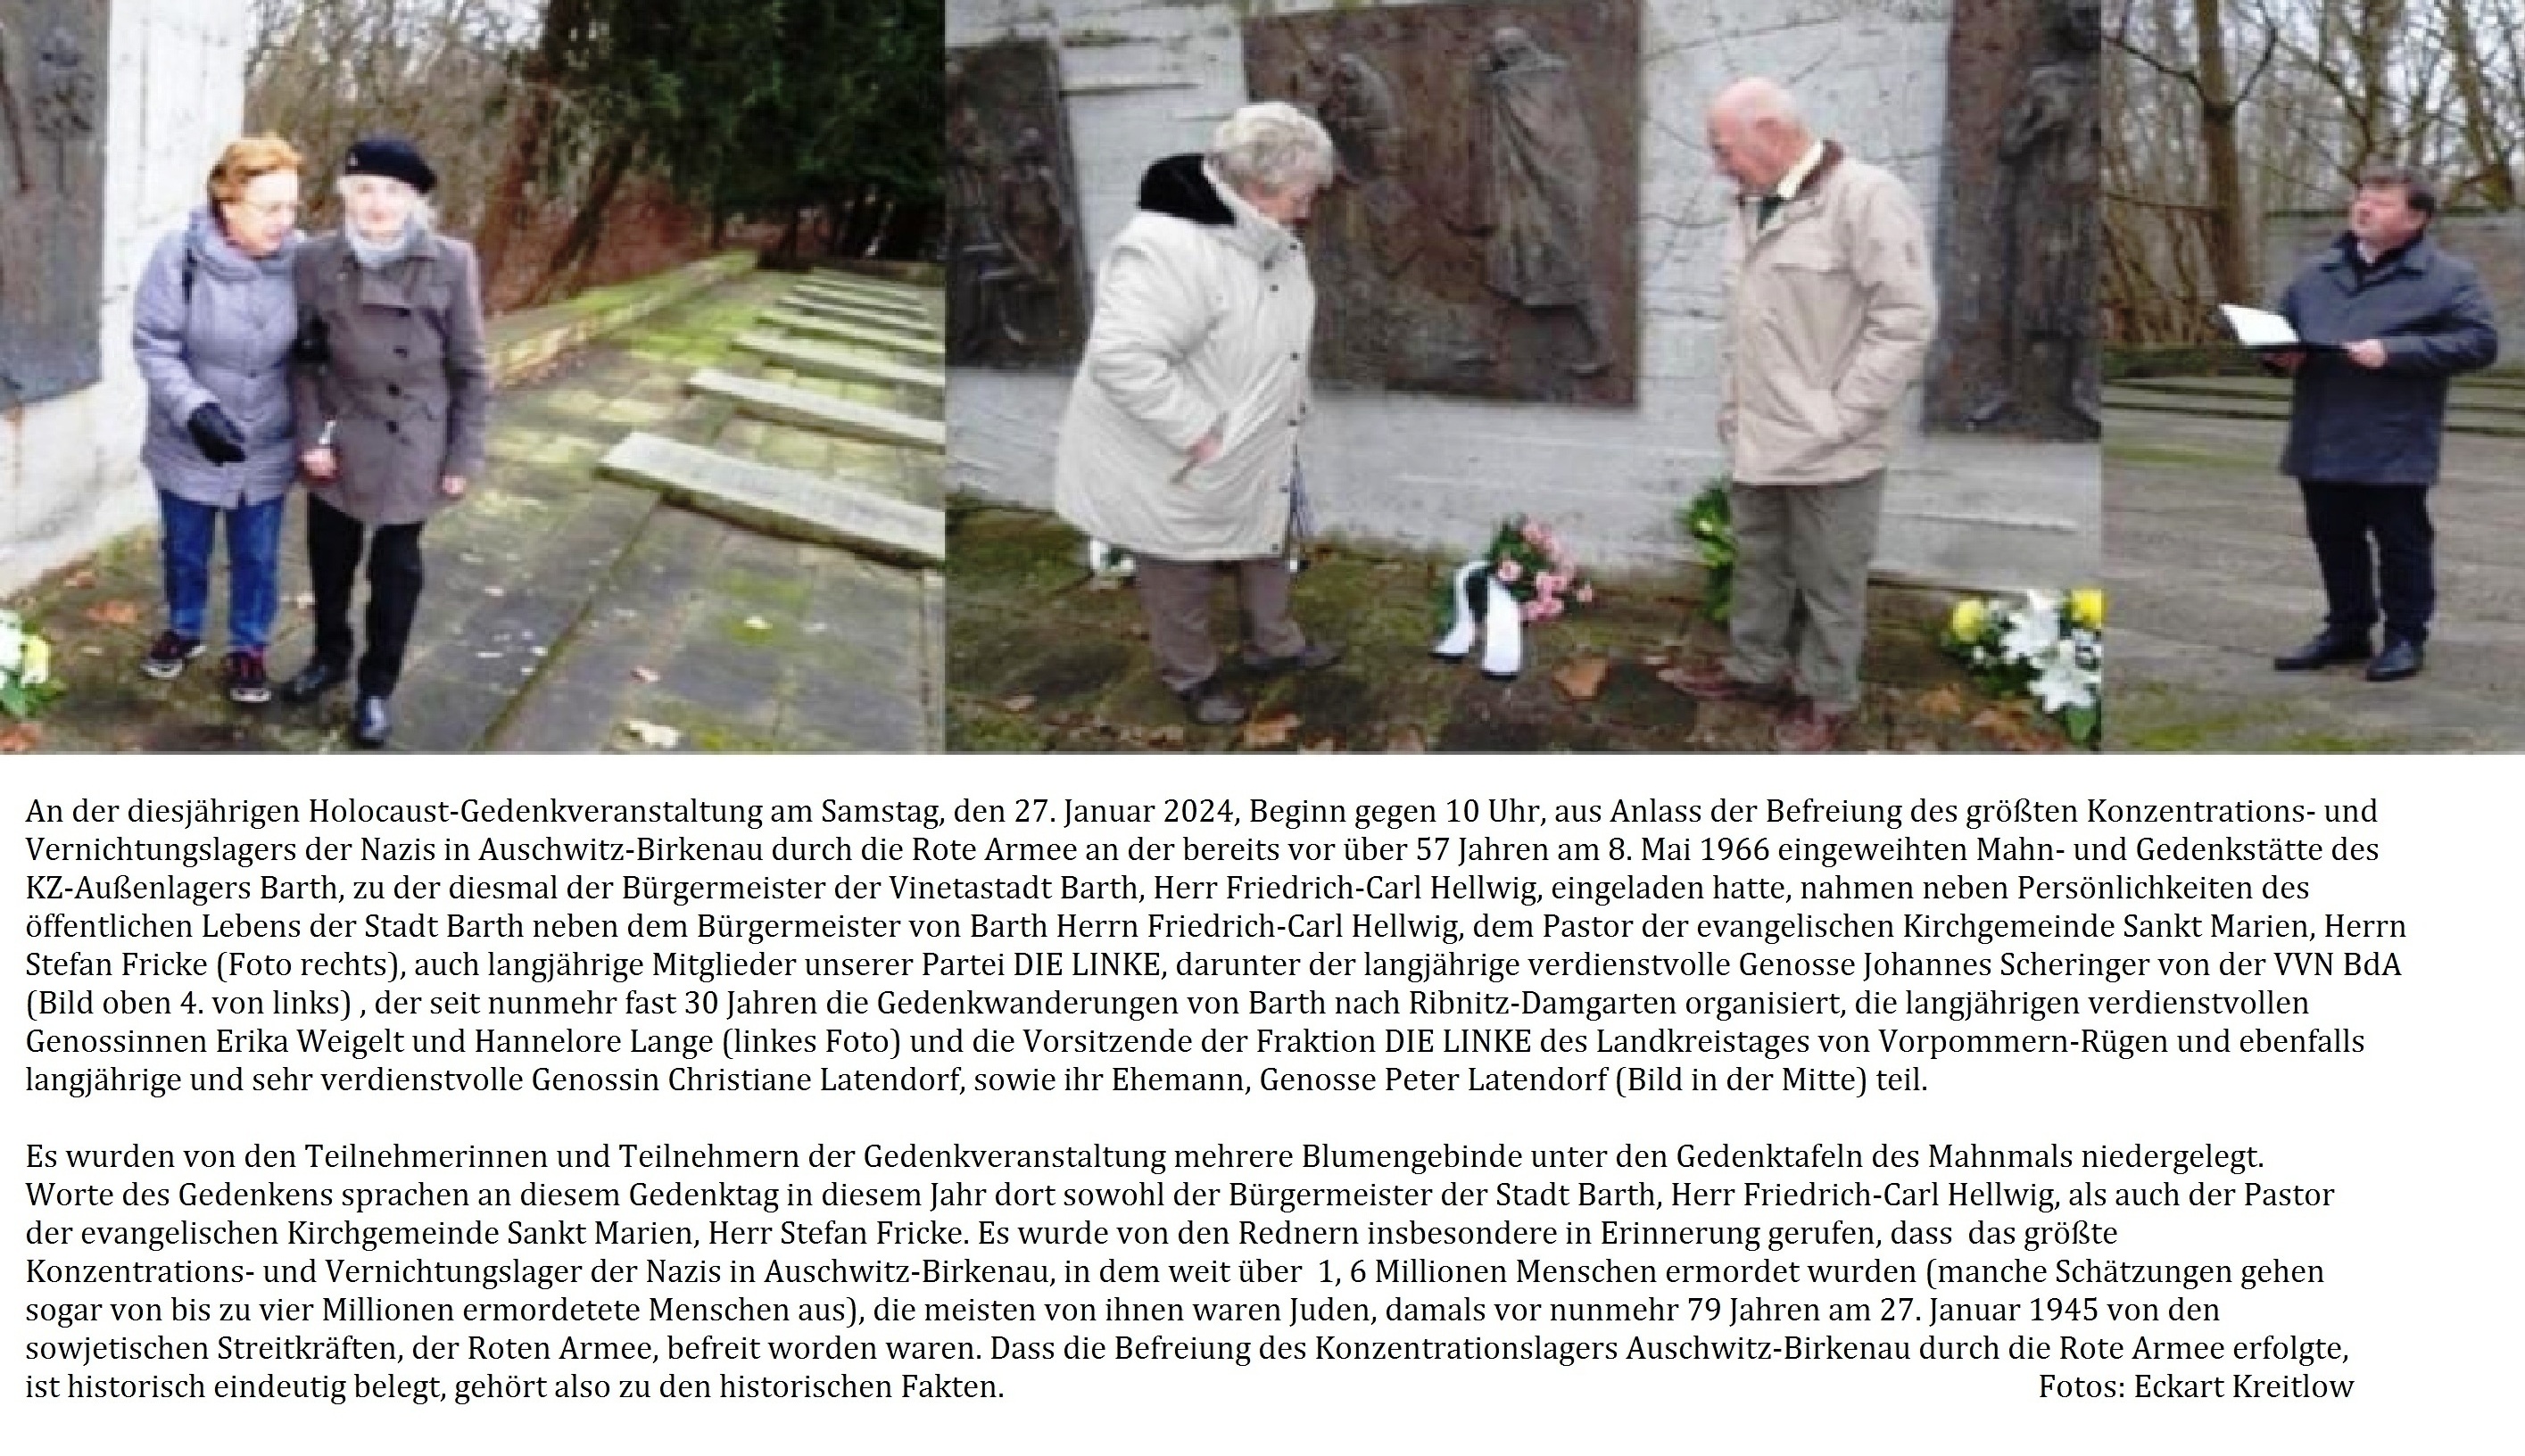 Holocaust-Gedenkveranstaltung am Samstag, den 27. Januar 2024, Beginn gegen 10 Uhr, an der bereits vor über 57 Jahren am 8. Mai 1966 eingeweihten Mahn- und Gedenkstätte des KZ-Außenlagers Barth. - Fotos: Eckart Kreitlow